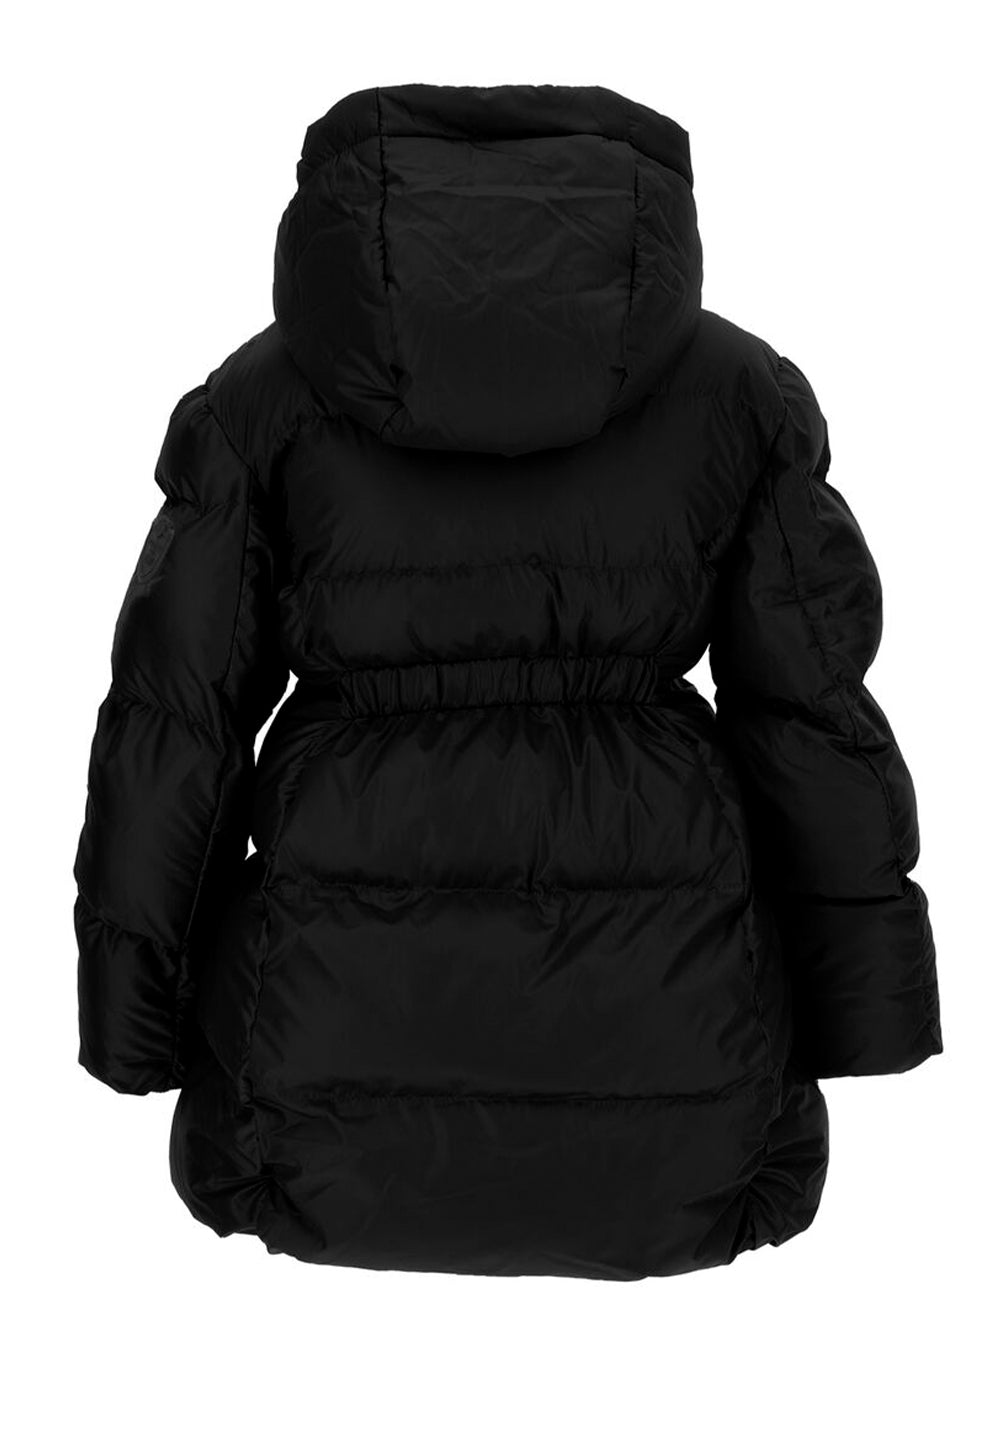 Black jacket for girls